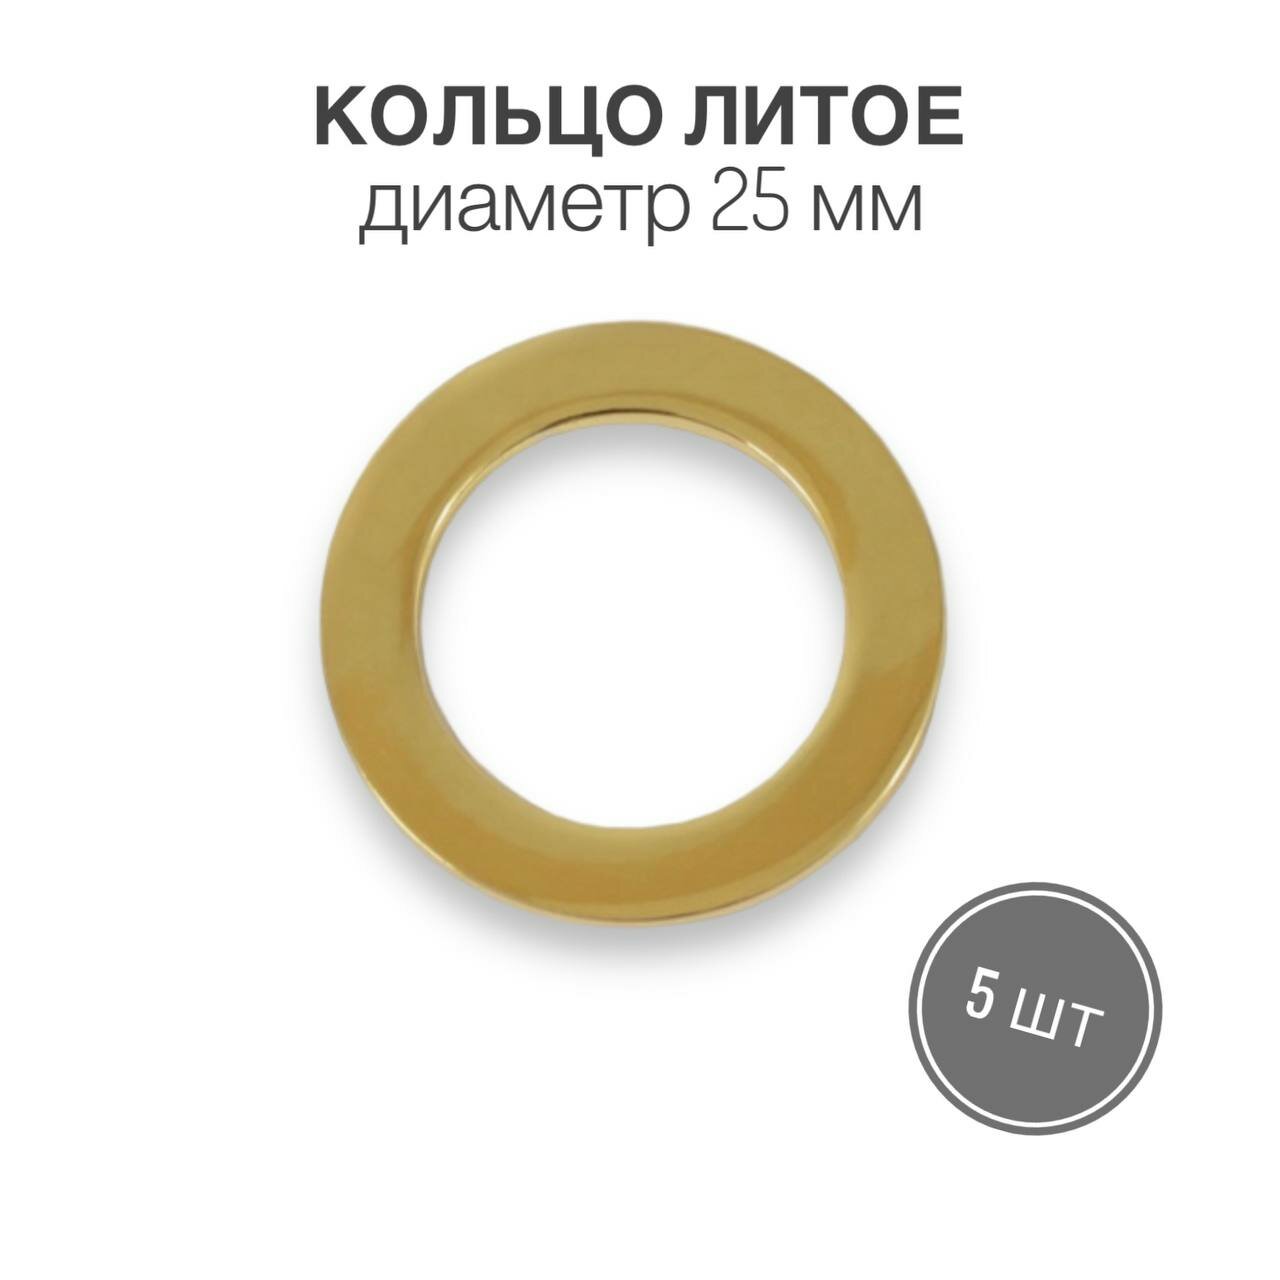 Кольцо литое, 25 мм, золото (брасс полированный), 5 шт